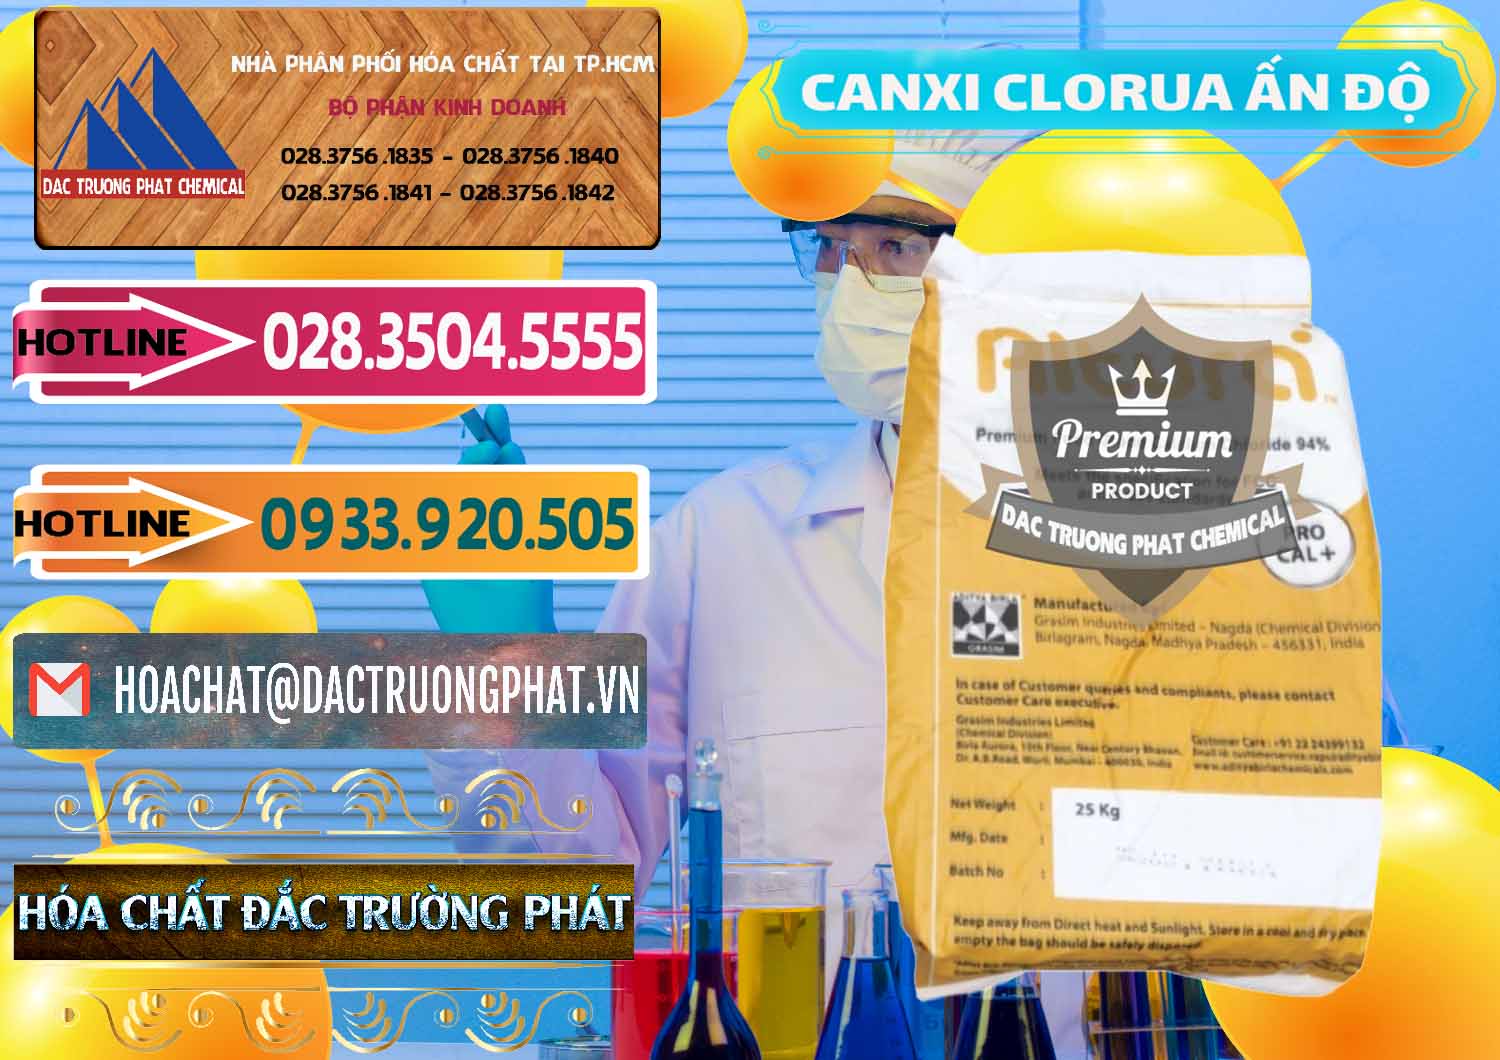 Nơi chuyên nhập khẩu & bán CaCl2 – Canxi Clorua Food Grade Altura Aditya Birla Grasim Ấn Độ India - 0436 - Đơn vị chuyên cung ứng - phân phối hóa chất tại TP.HCM - dactruongphat.vn